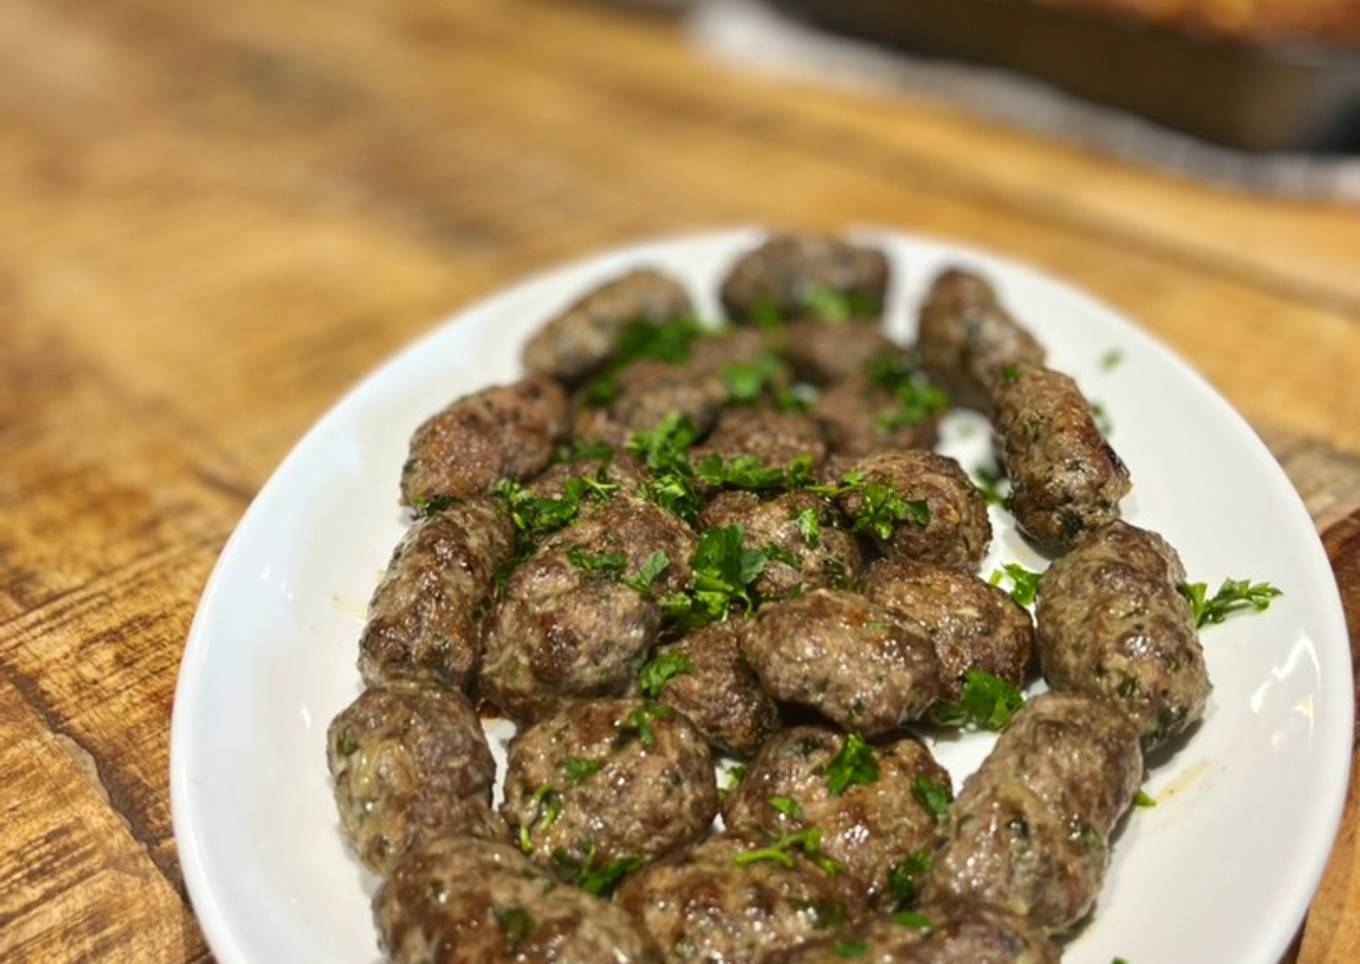 Kafta balls - Lebanese style meatballs